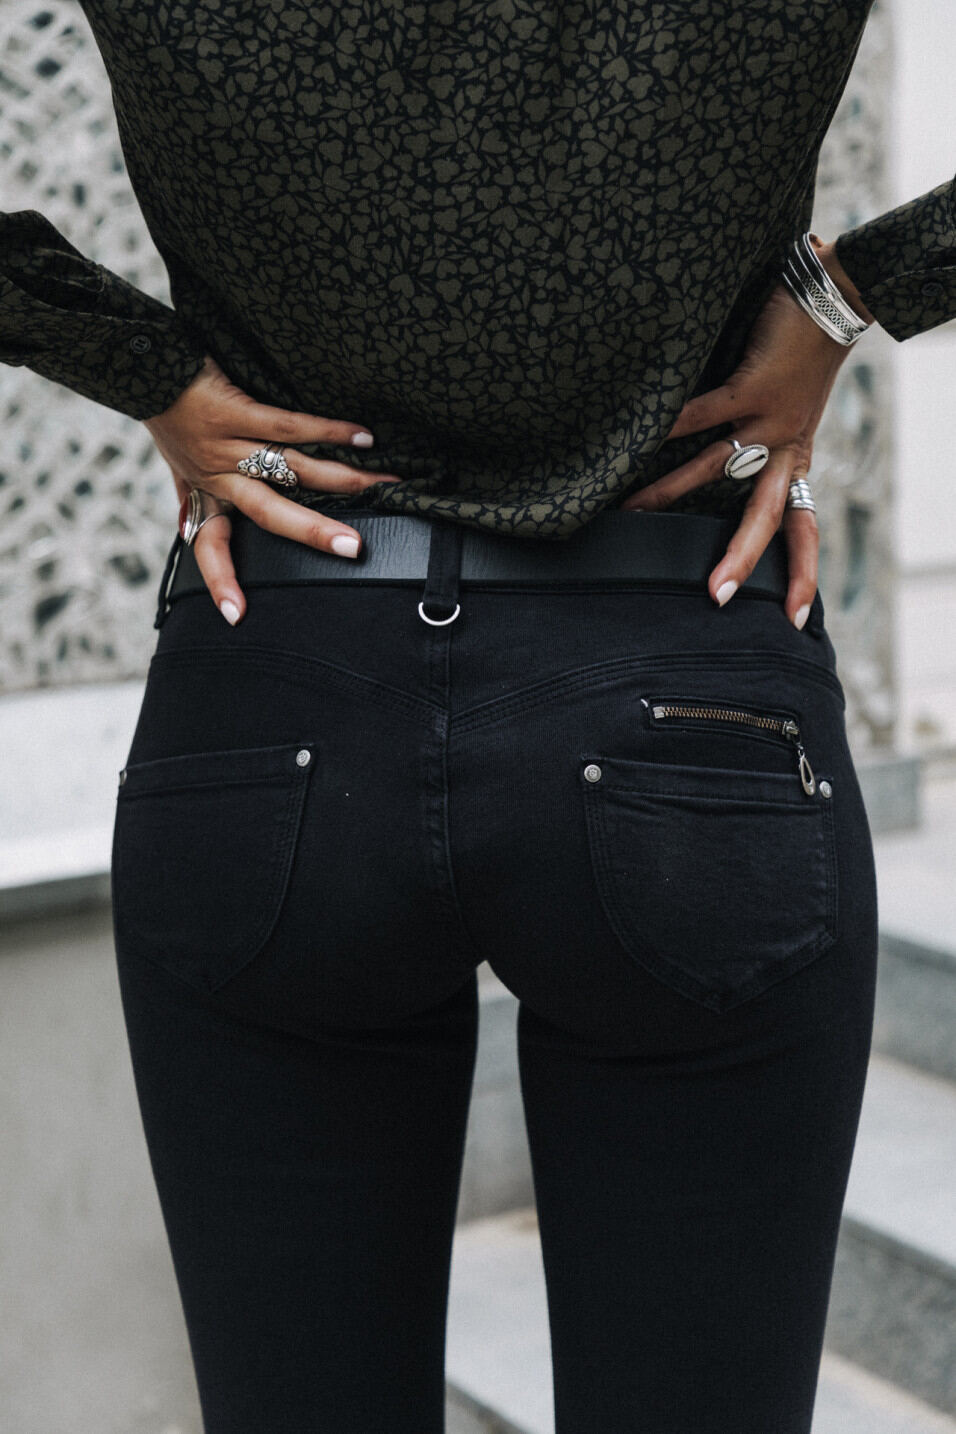 pantalon noir pour femme